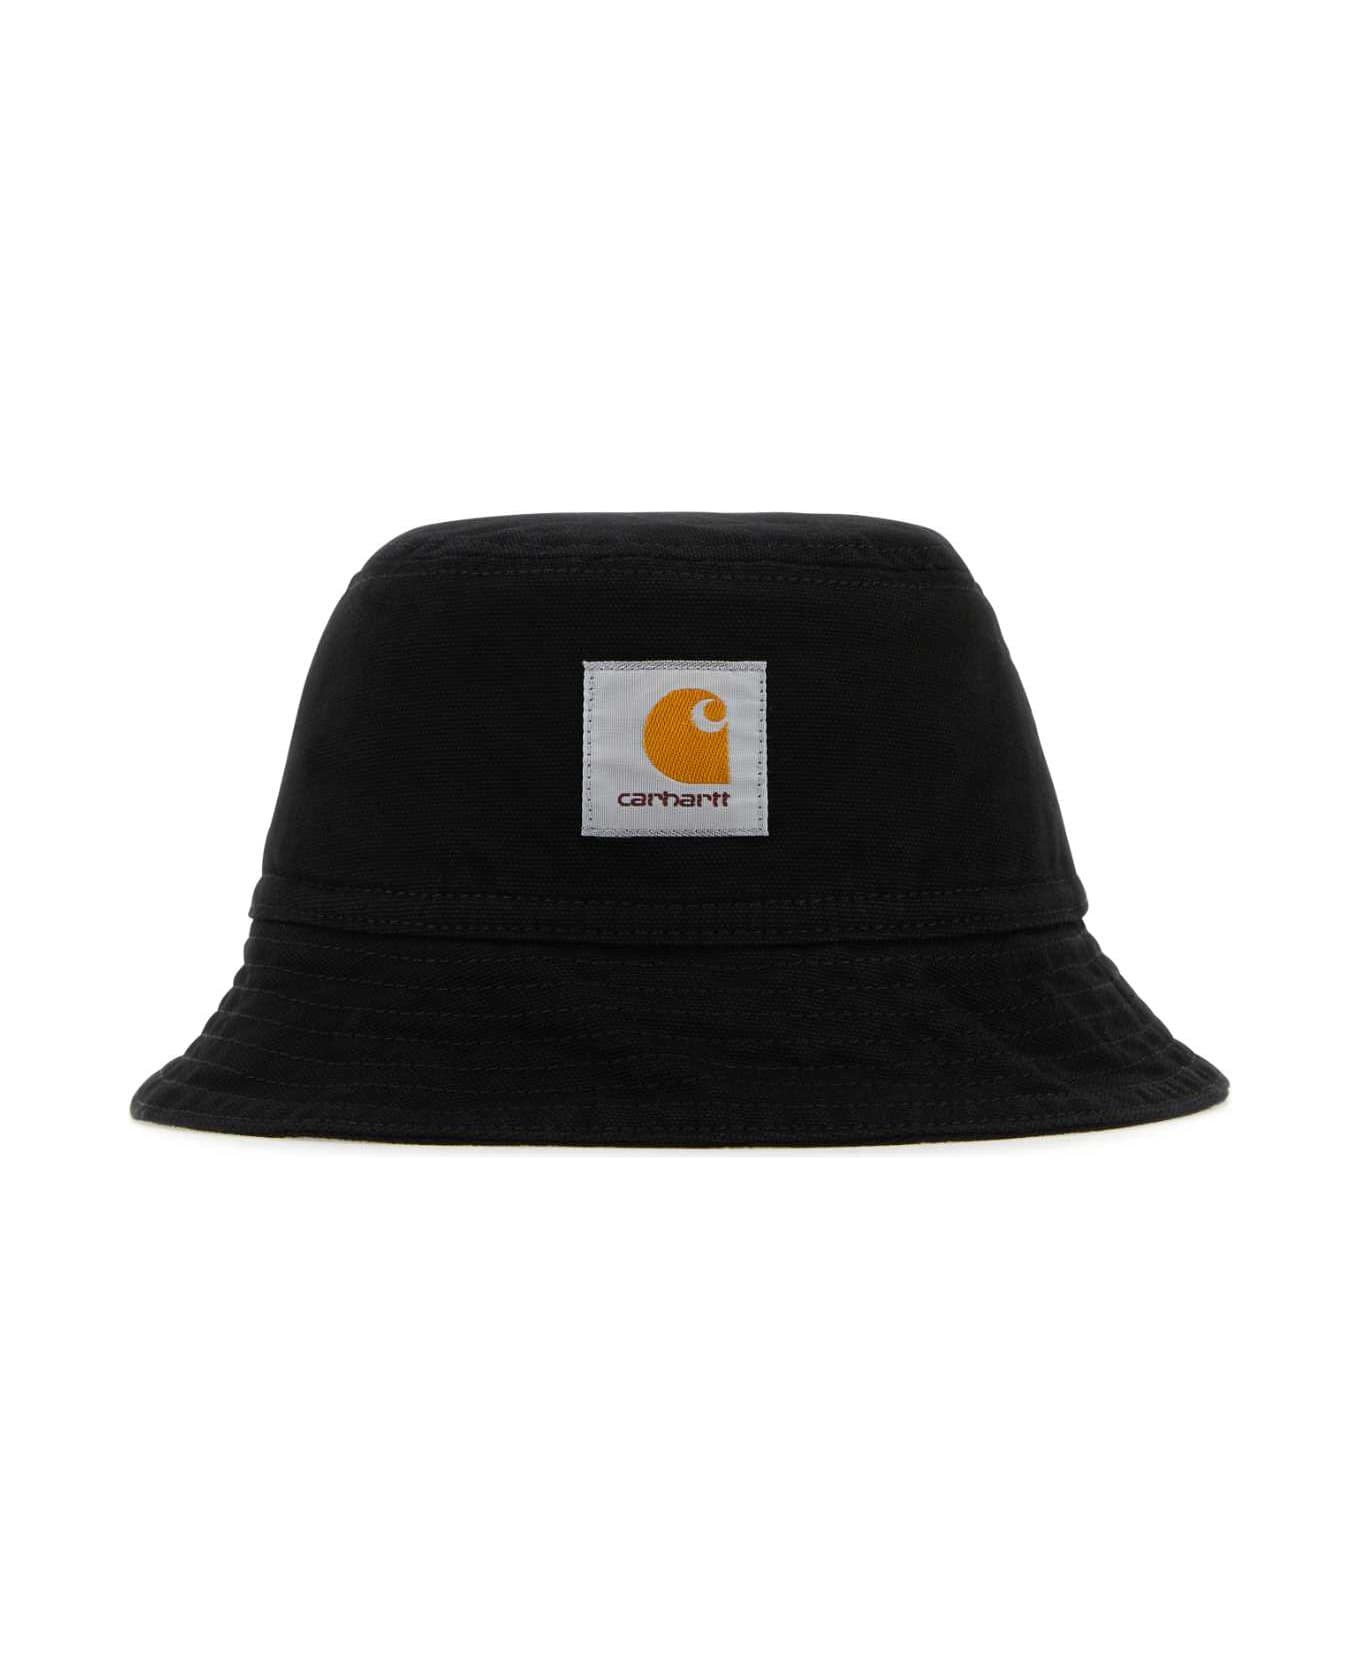 Carhartt Black Cotton Bayfield Bucket Hat - BLK 帽子